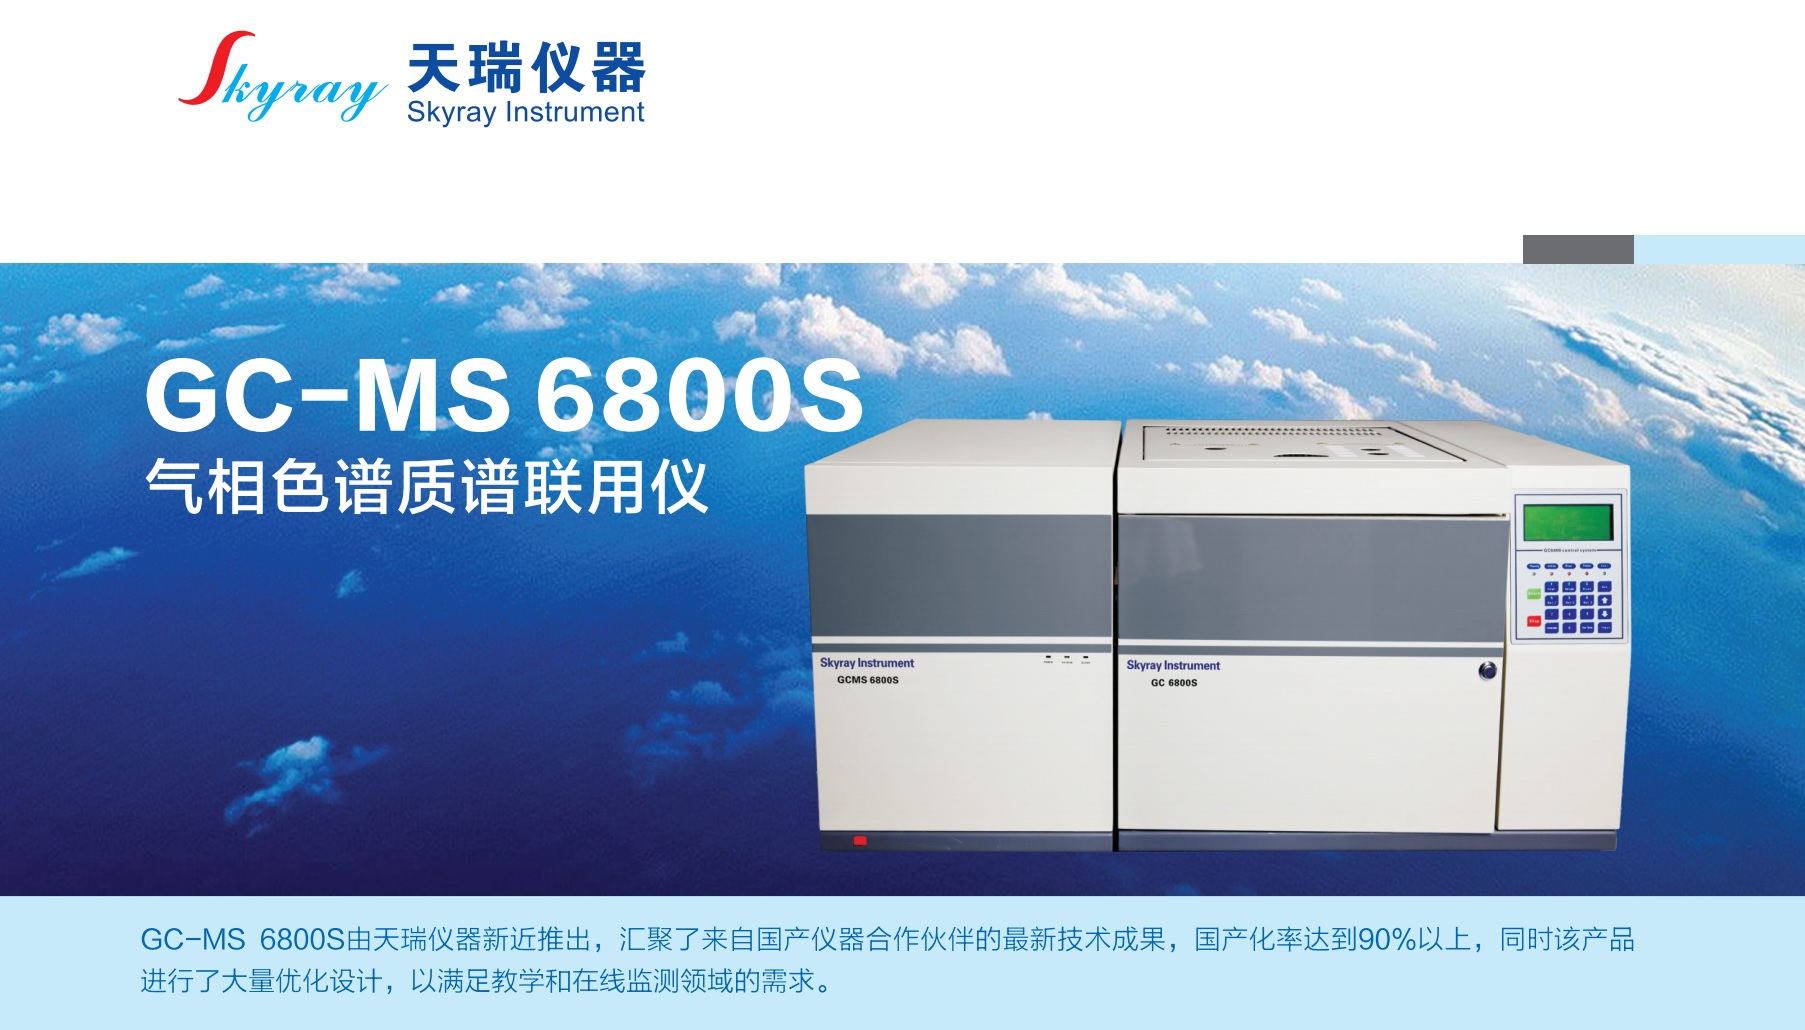 江蘇天瑞儀器股份有限公司-GC-MS6800S 